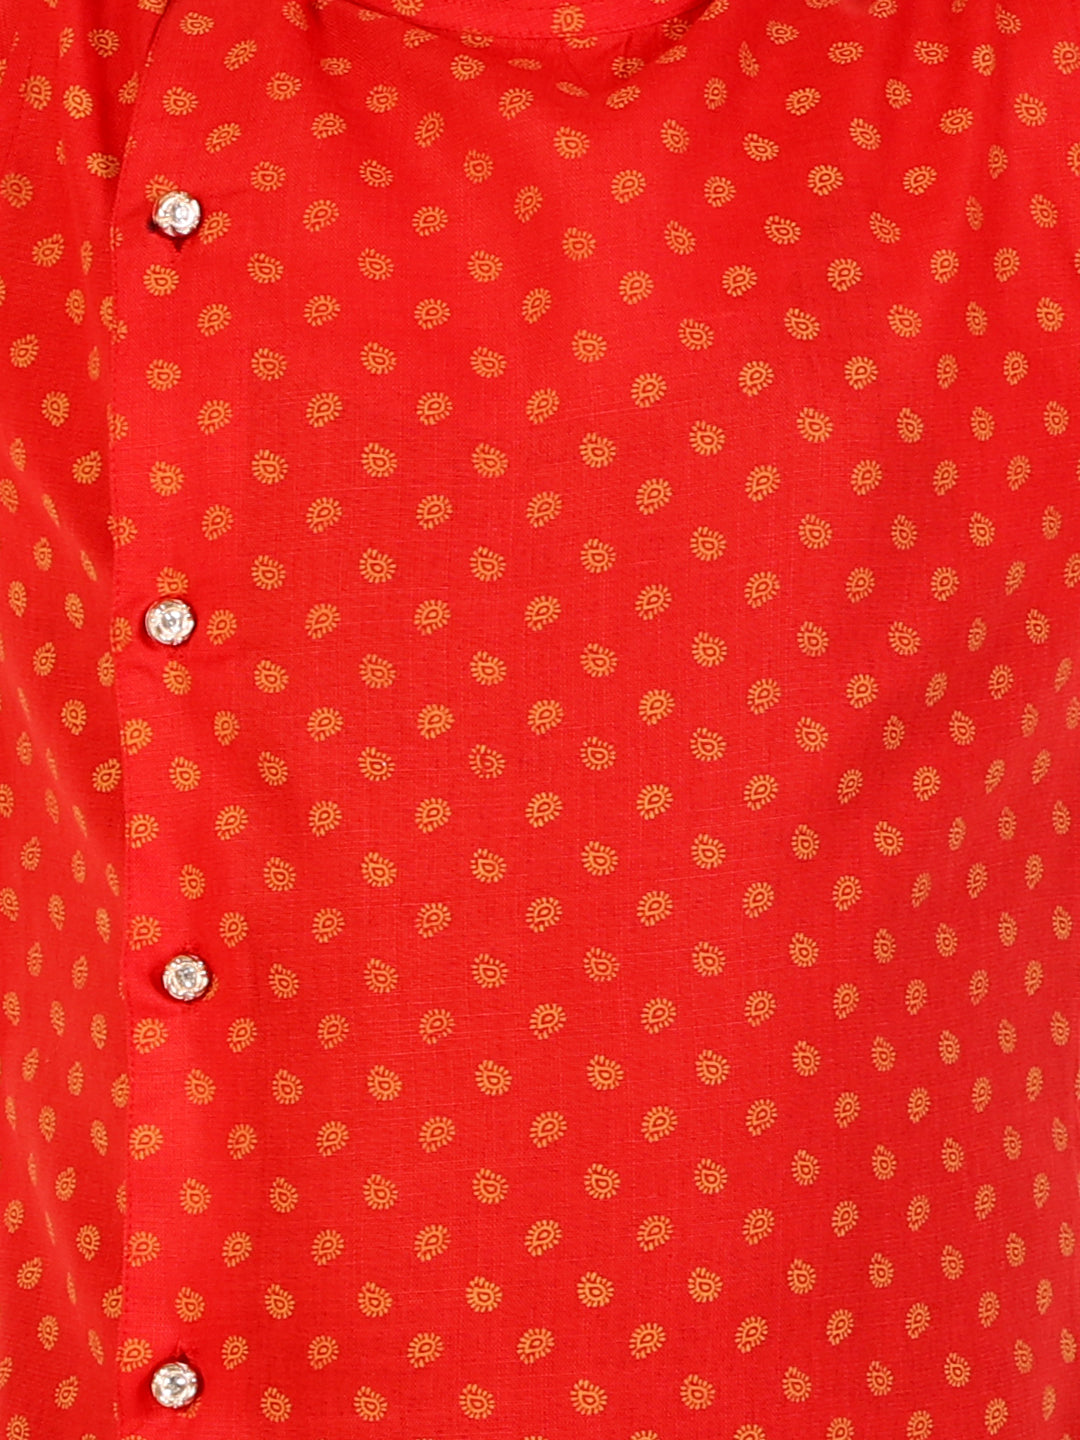 Boys Cotton Printed Kurta Pyjama Set (Red)